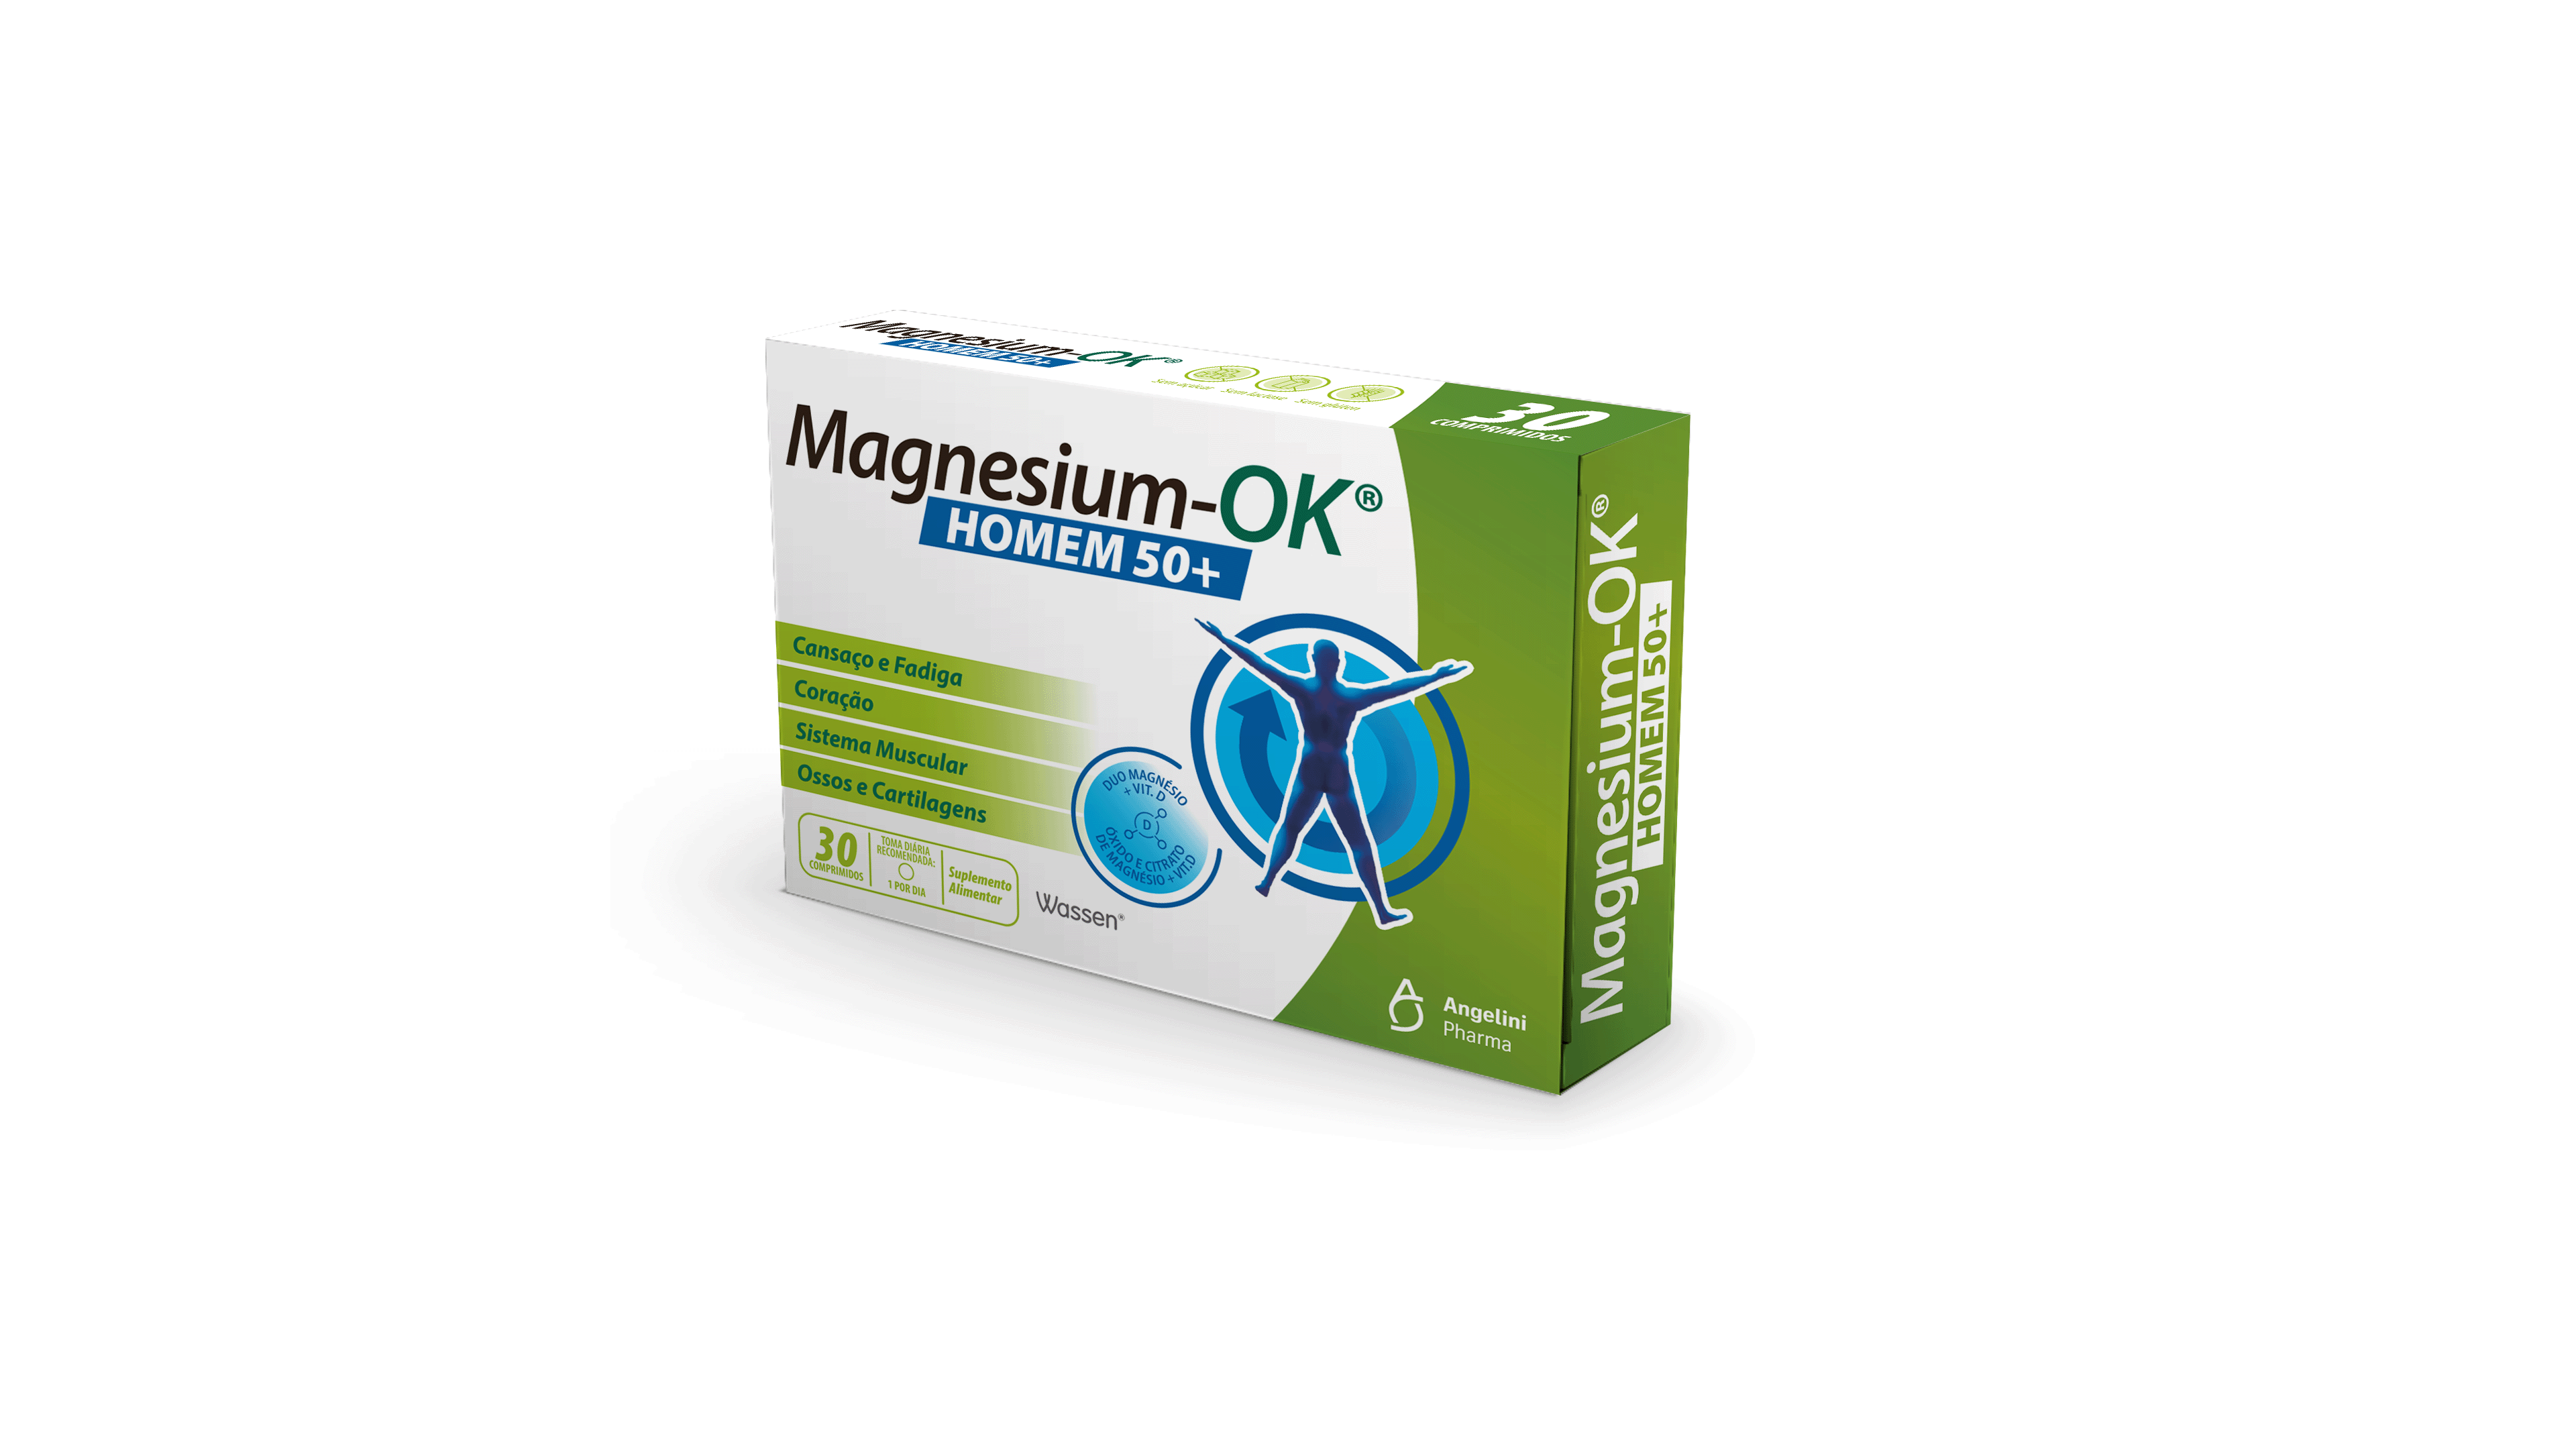 Magnesium-Ok Homem 50+ (X30 Comprimidos)